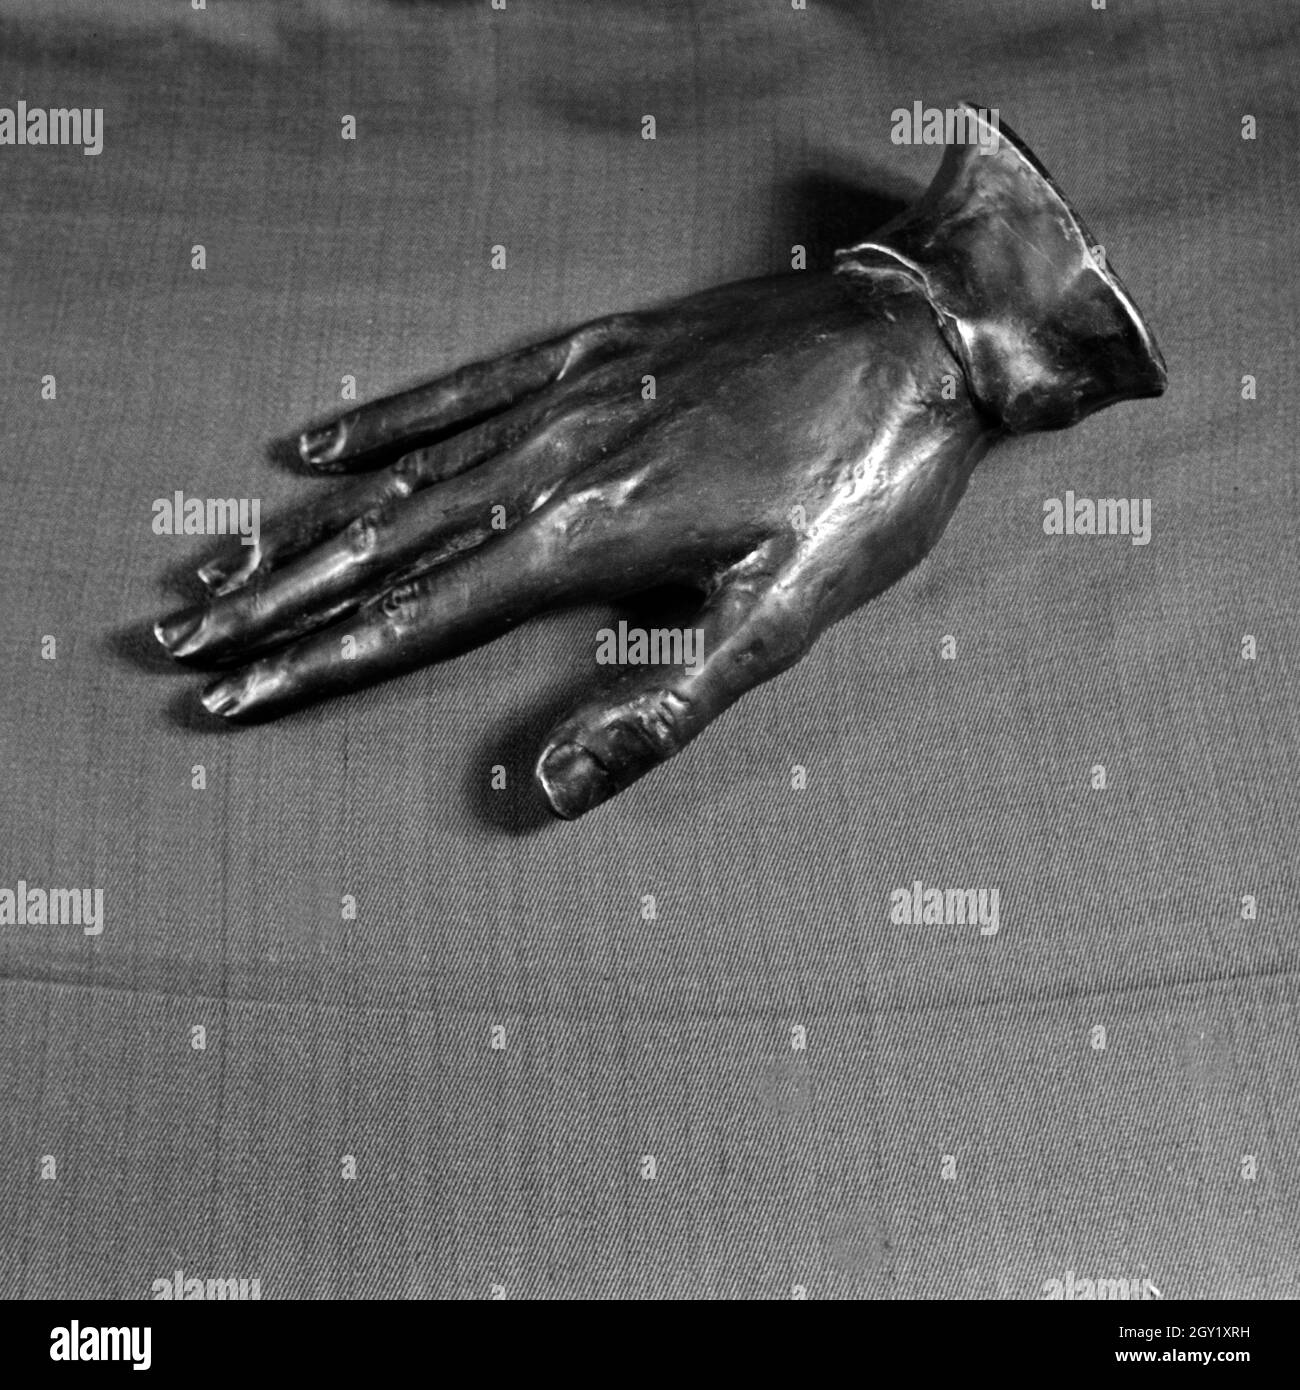 Reproduktion aus der Sammlung Erich Retzlaff: Hand aus Bronze, Deutschland 1930er Jahre. Reproduktion von der Erich Retzlaff Sammlung: bronce Hand, Deutschland 1930. Stockfoto